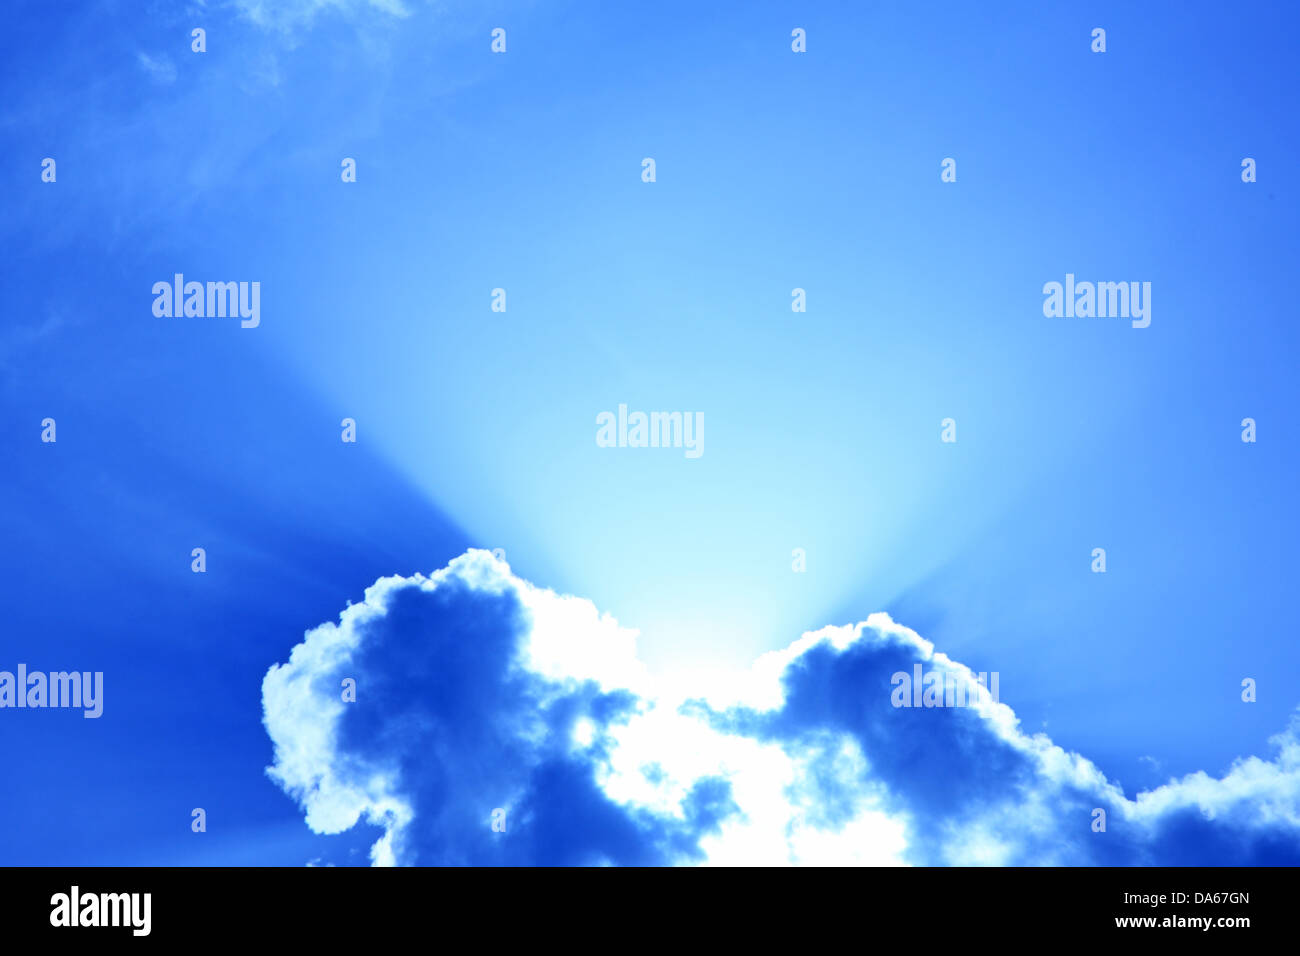 Sunbeam, Nature, Cloud, Sky, Dramatic, Scenic, Switzerland, Europe, Ticino, Day, No People, Horizontal, sky, sun Stock Photo